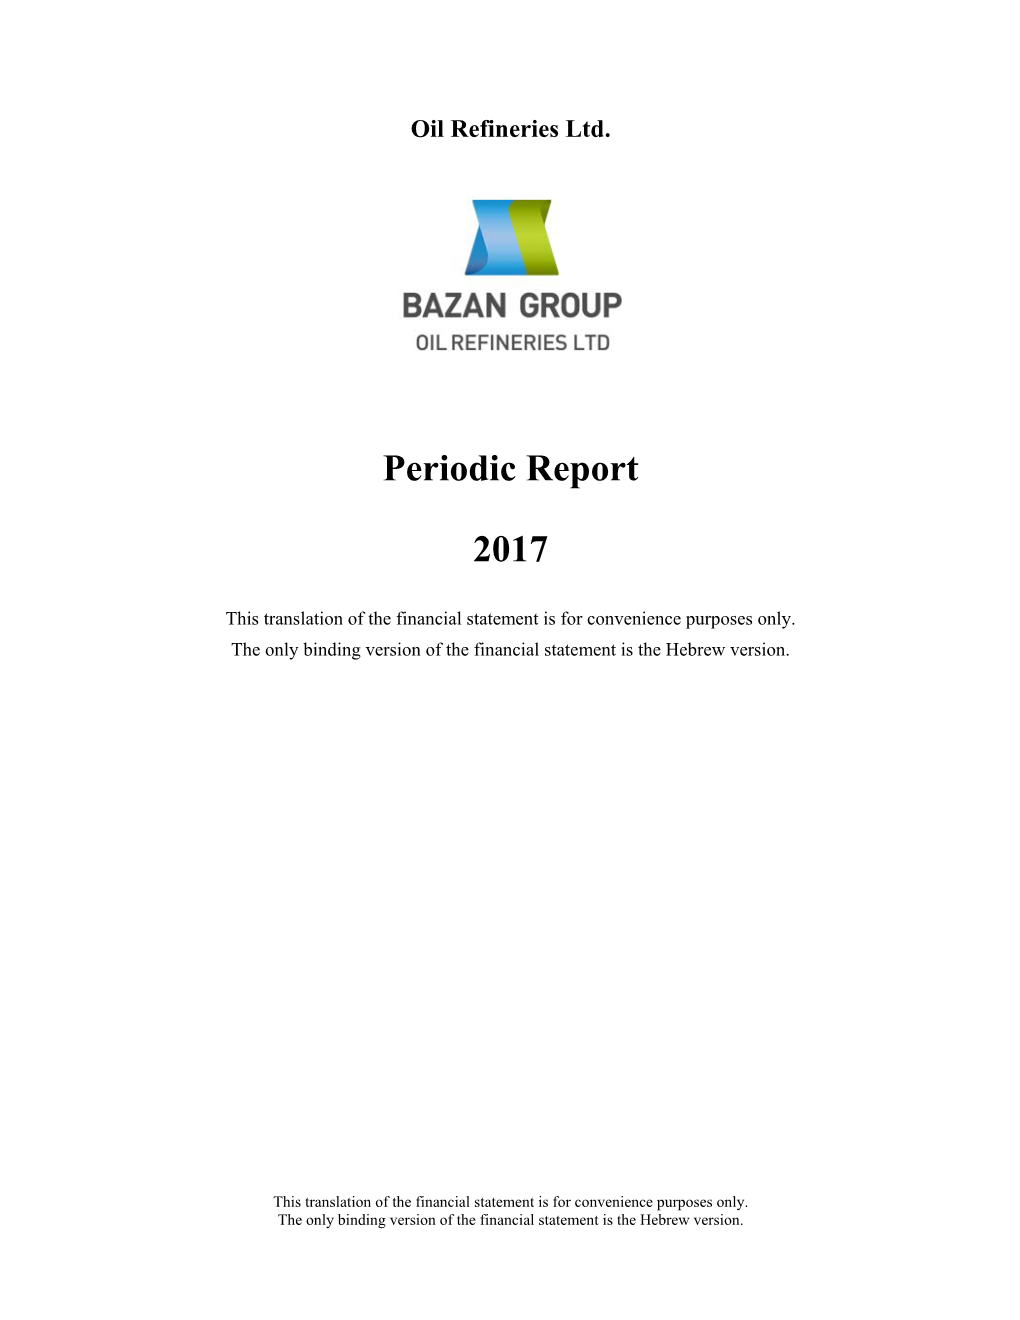 Periodic Report 2017